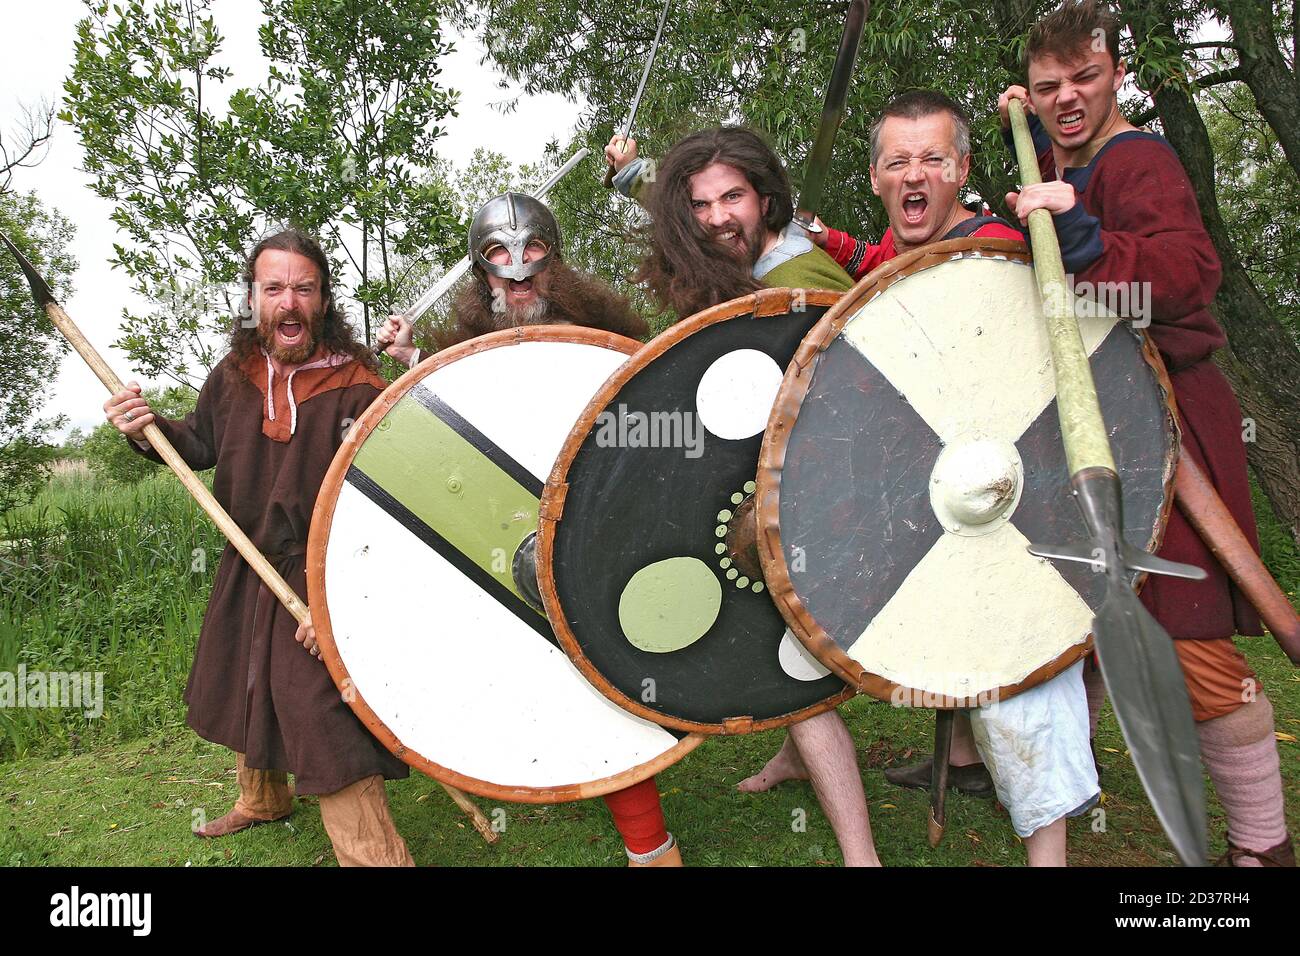 Bataille de Viking sur le lac de Llangorse Sourh pays de Galles, Powys. Un groupe d'amateurs de viking s'est réuni au lac Llangorse dans le parc national de Brecon Beacons pour y mettre en scène Banque D'Images